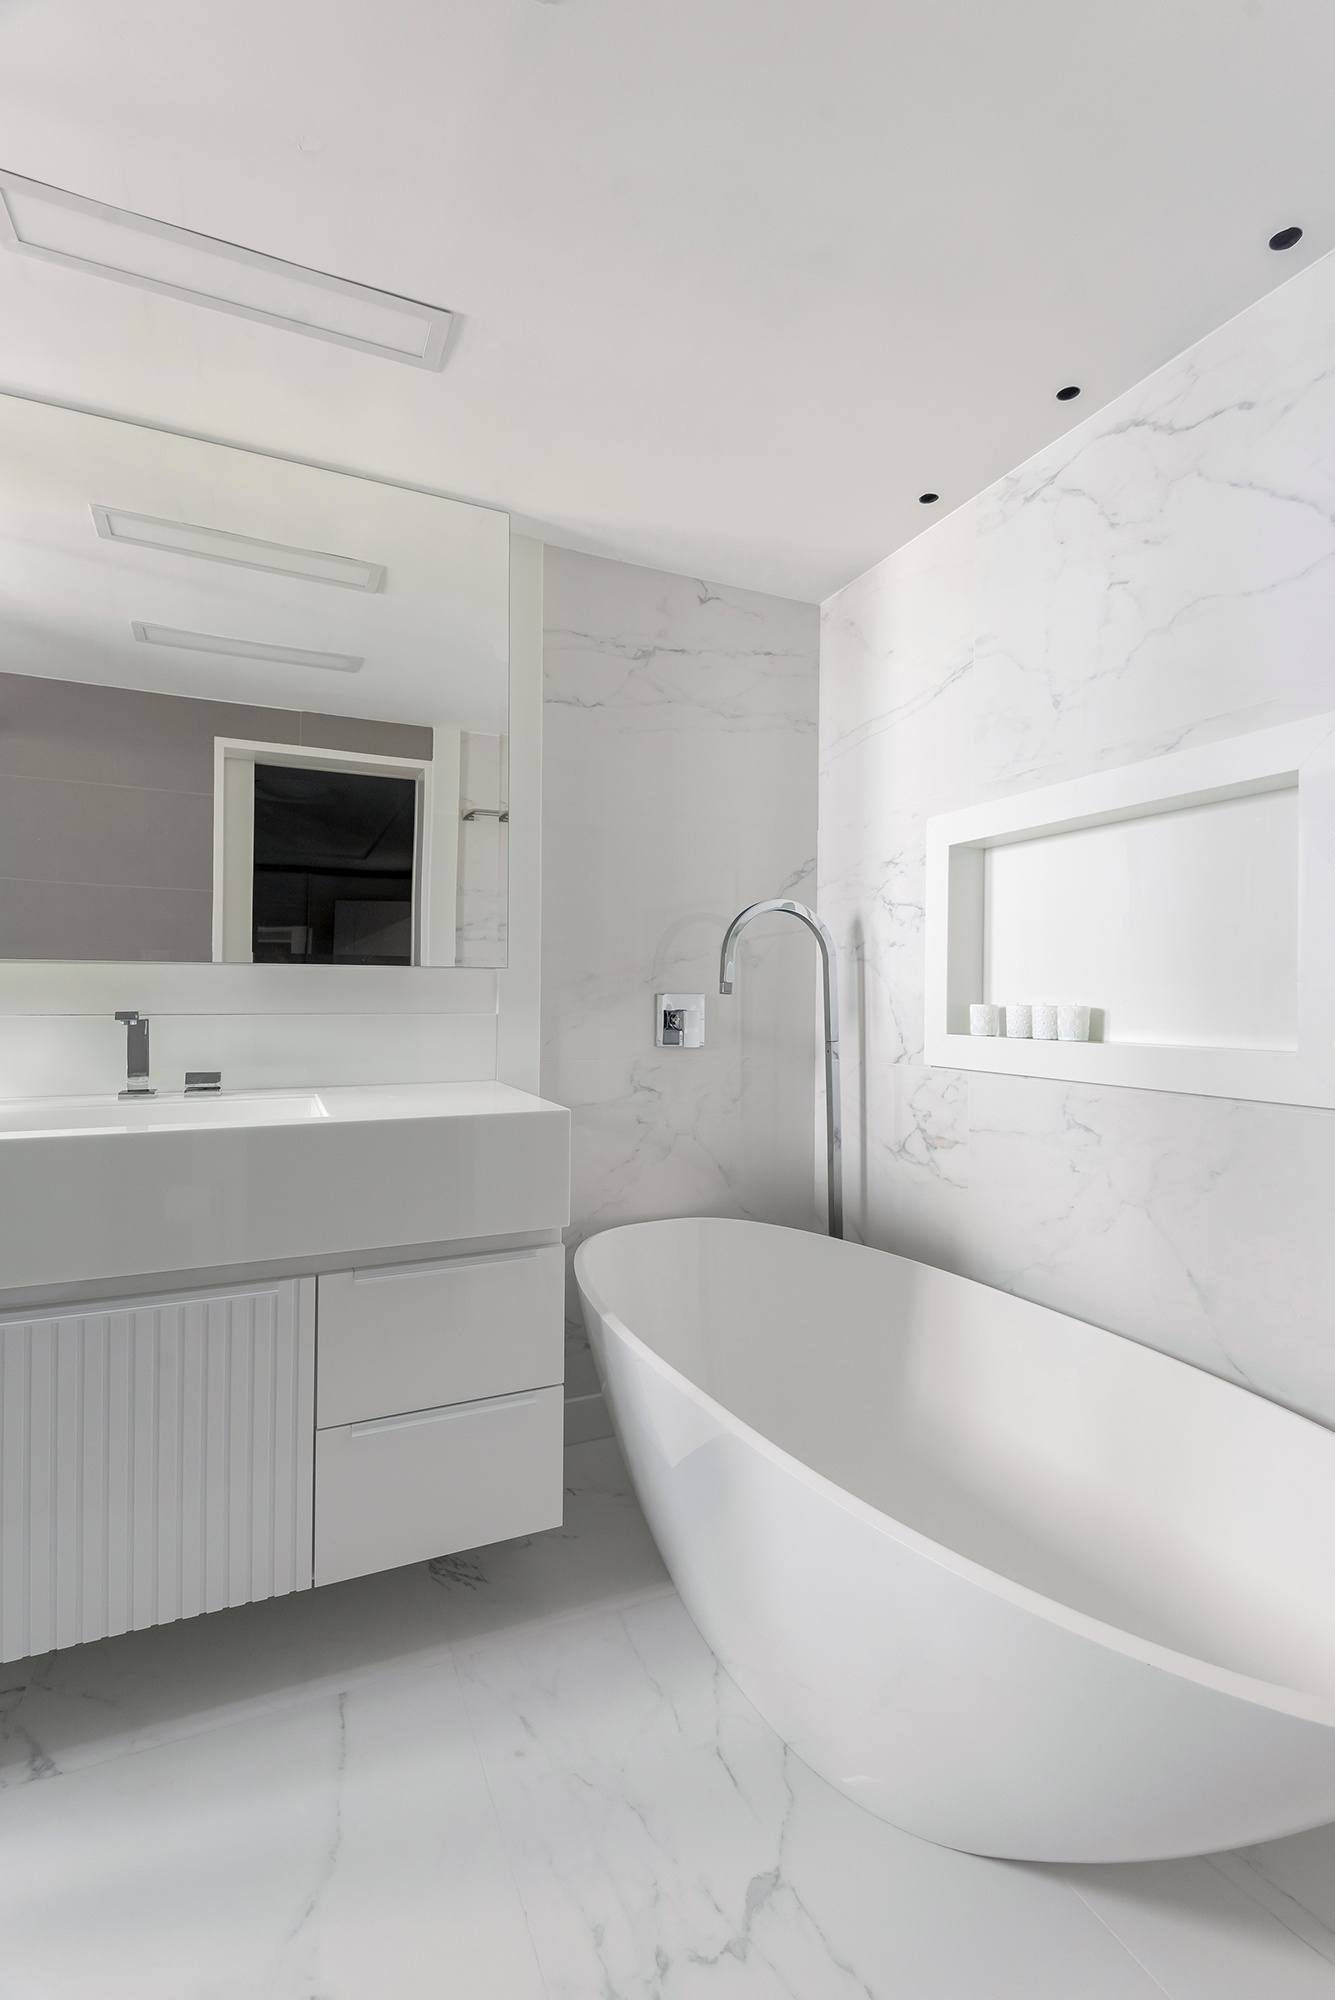 Dois apartamentos unidos criam casa de praia para a família em 370 m². Projeto de Maria Augusta Bittencourt, Na foto, banheiro com banheira e revestimentos brancos.